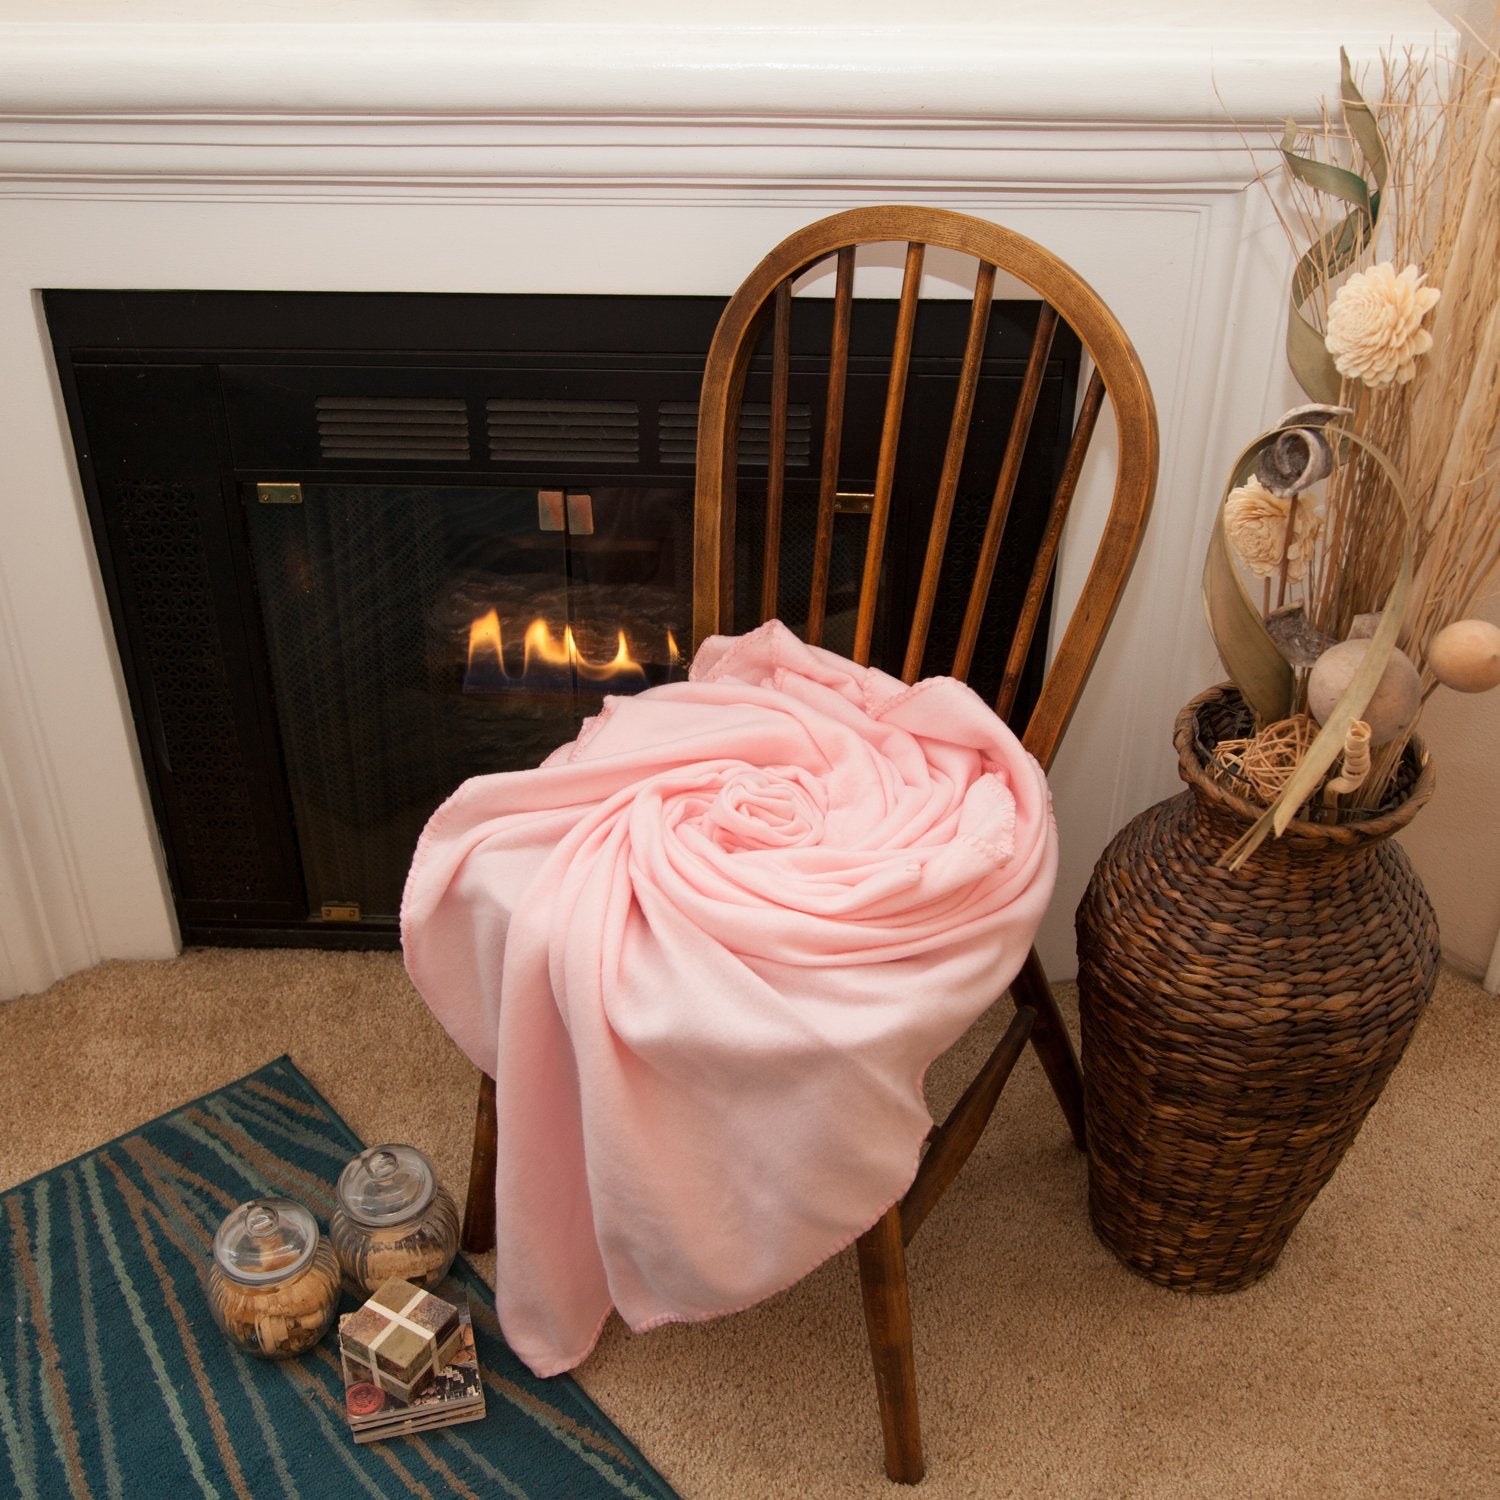 Imperial Home 50 x 60 Inch Soft Cozy Fleece Blanket / Fleece Throw - Pink